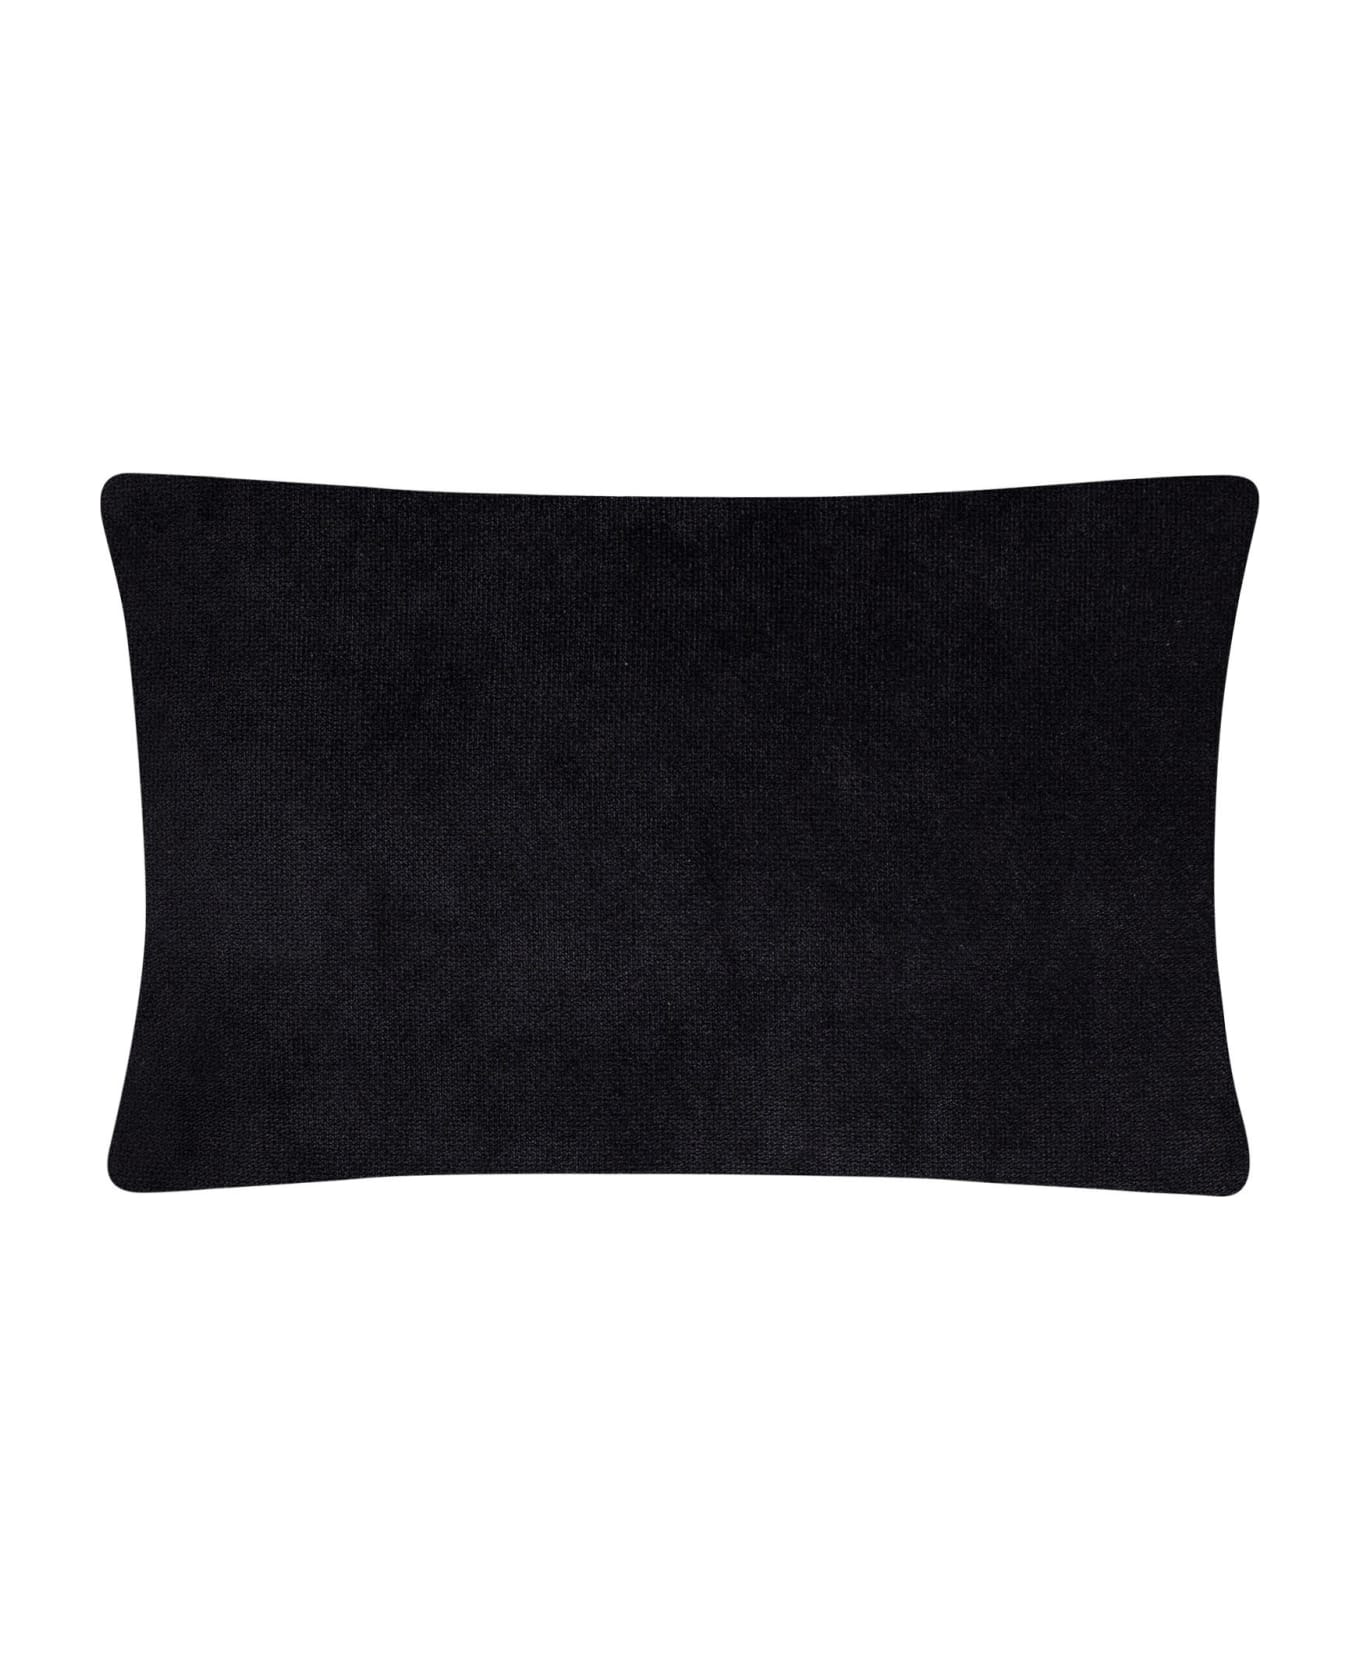 Lo Decor Mini Pillow Sketch Horizzontal - Black/White クッション